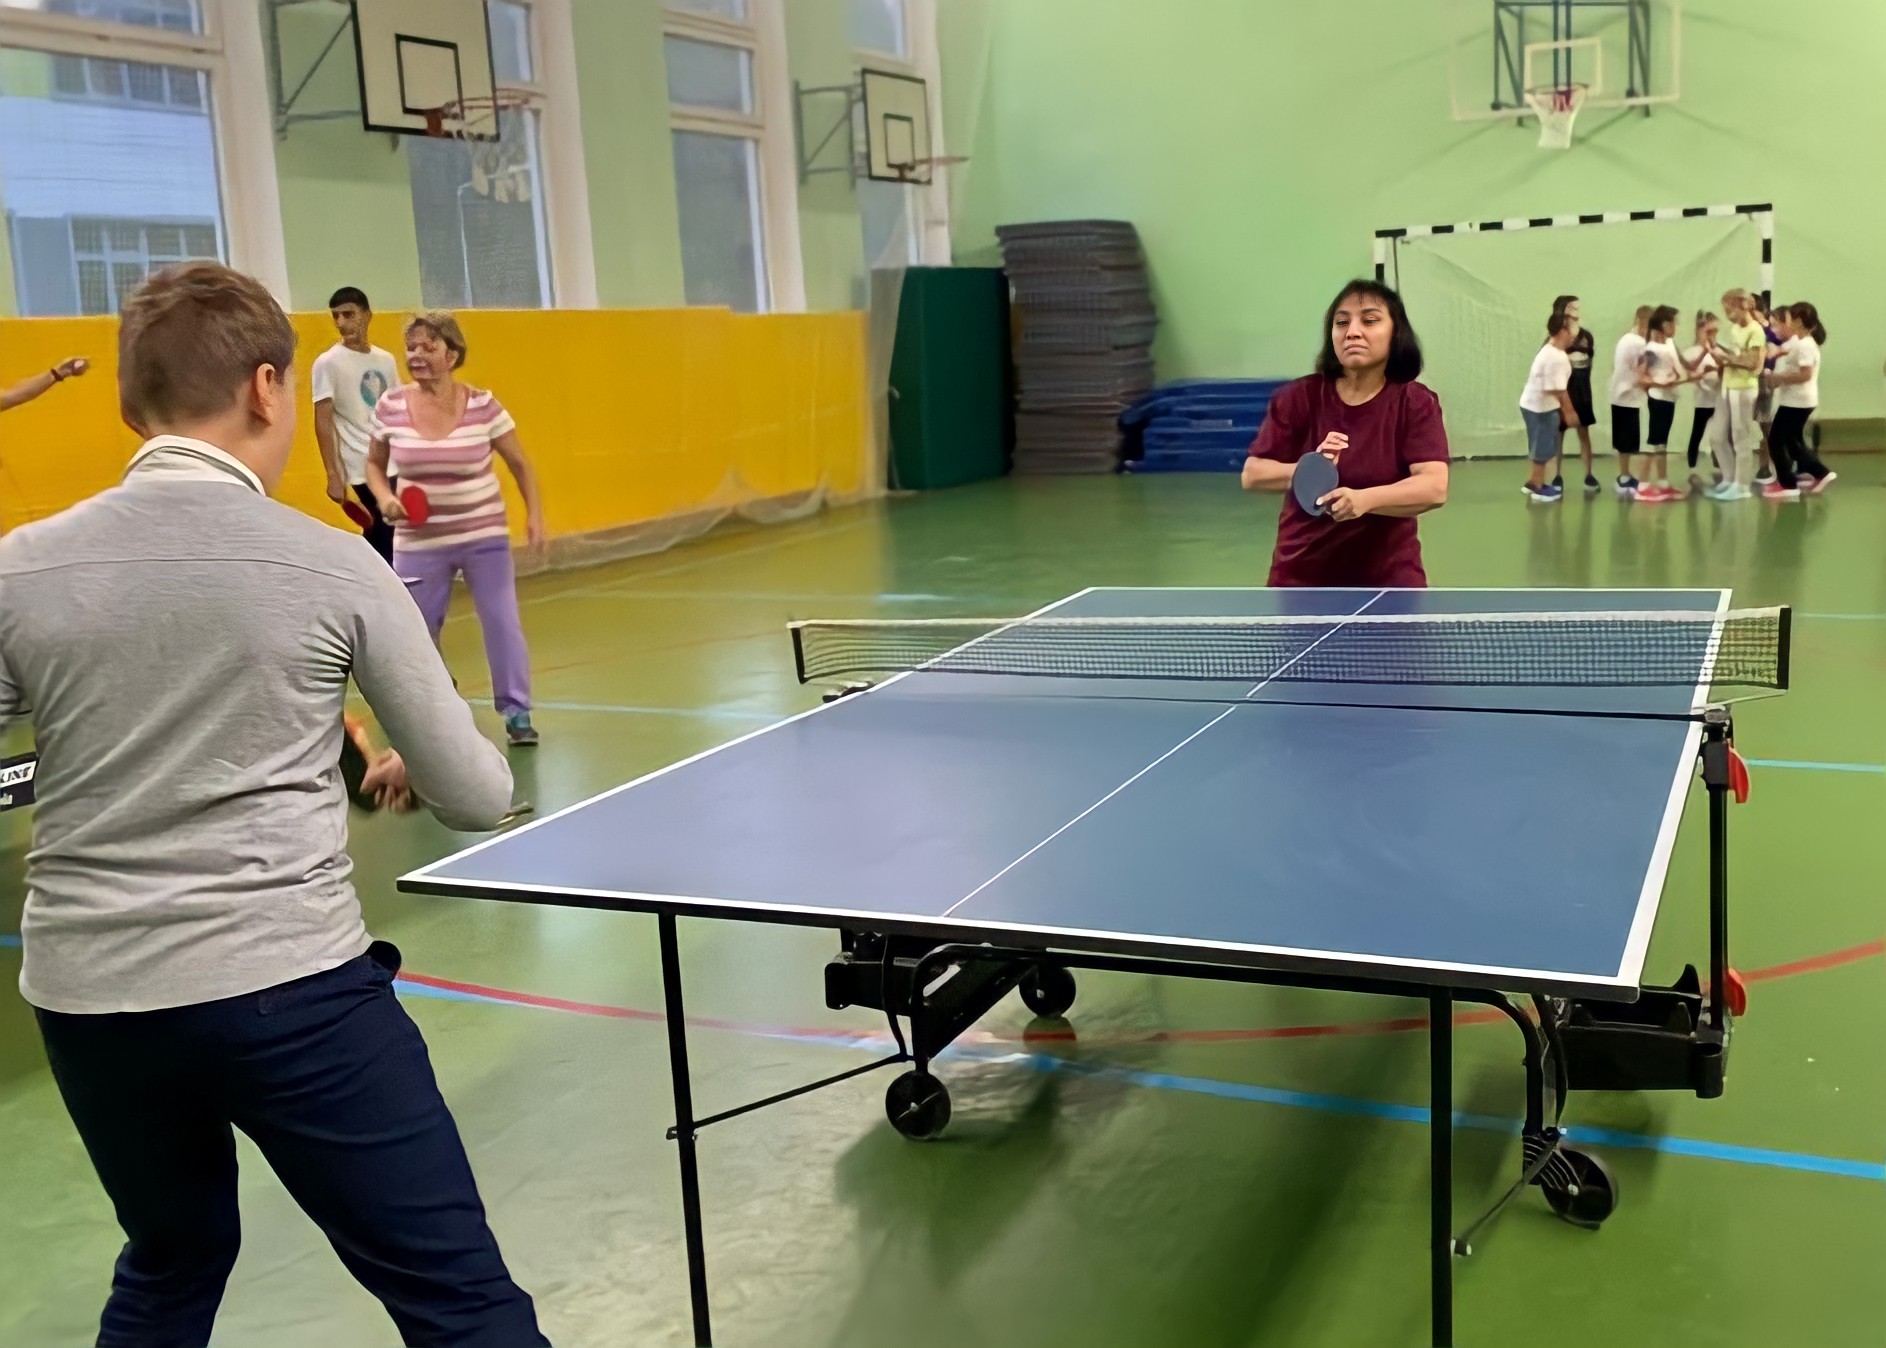 Турнир по настольному теннису провели в школе №2120 в Московском